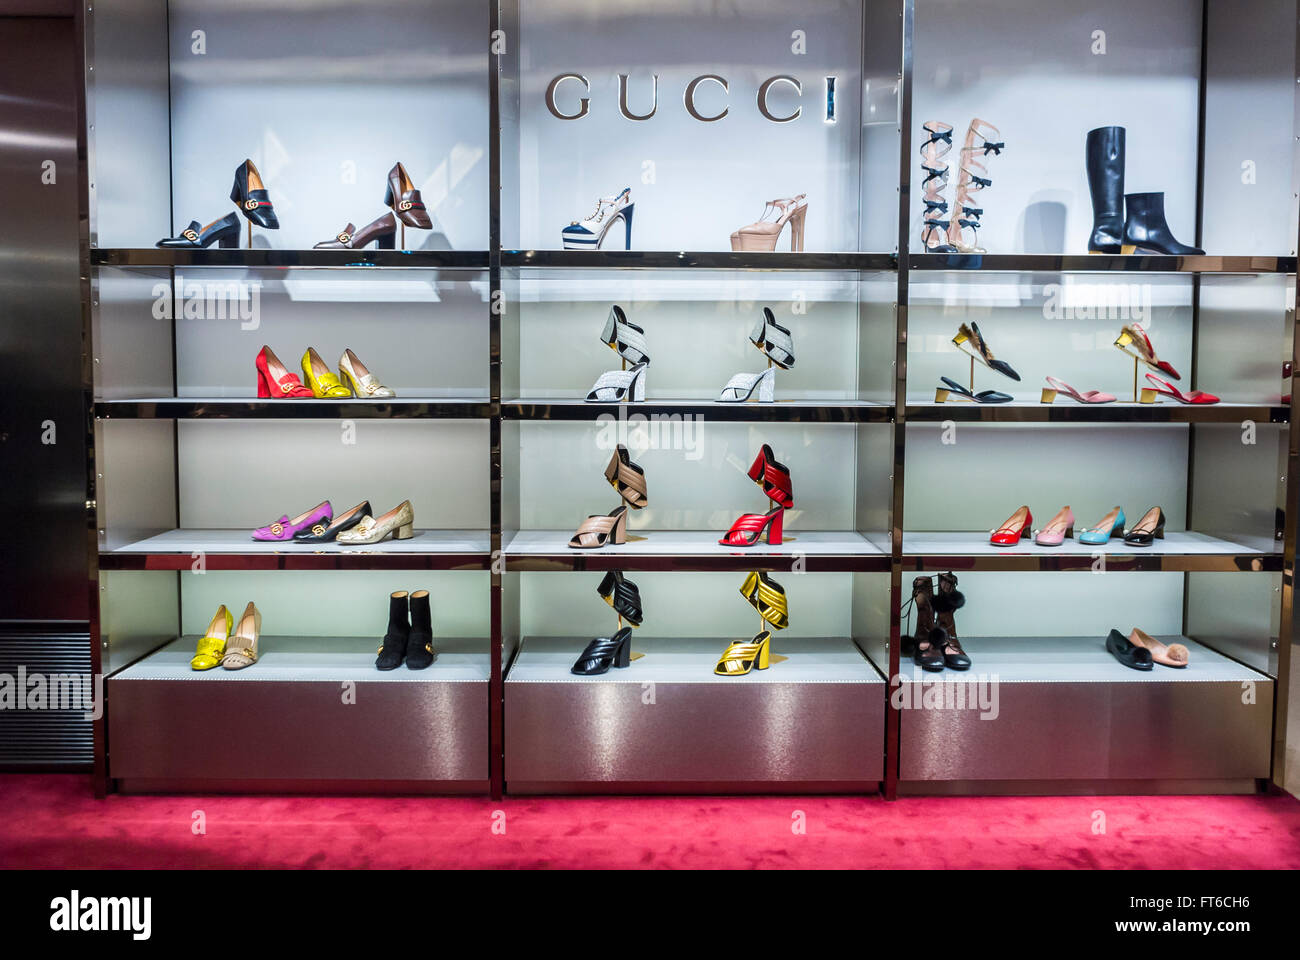 París, Francia, tiendas, grandes almacenes franceses, Le Printemps, Marca de lujo Gucci, zapatos de diseño para mujer en exhibición, estantes, zapatos de compras Fotografía de - Alamy